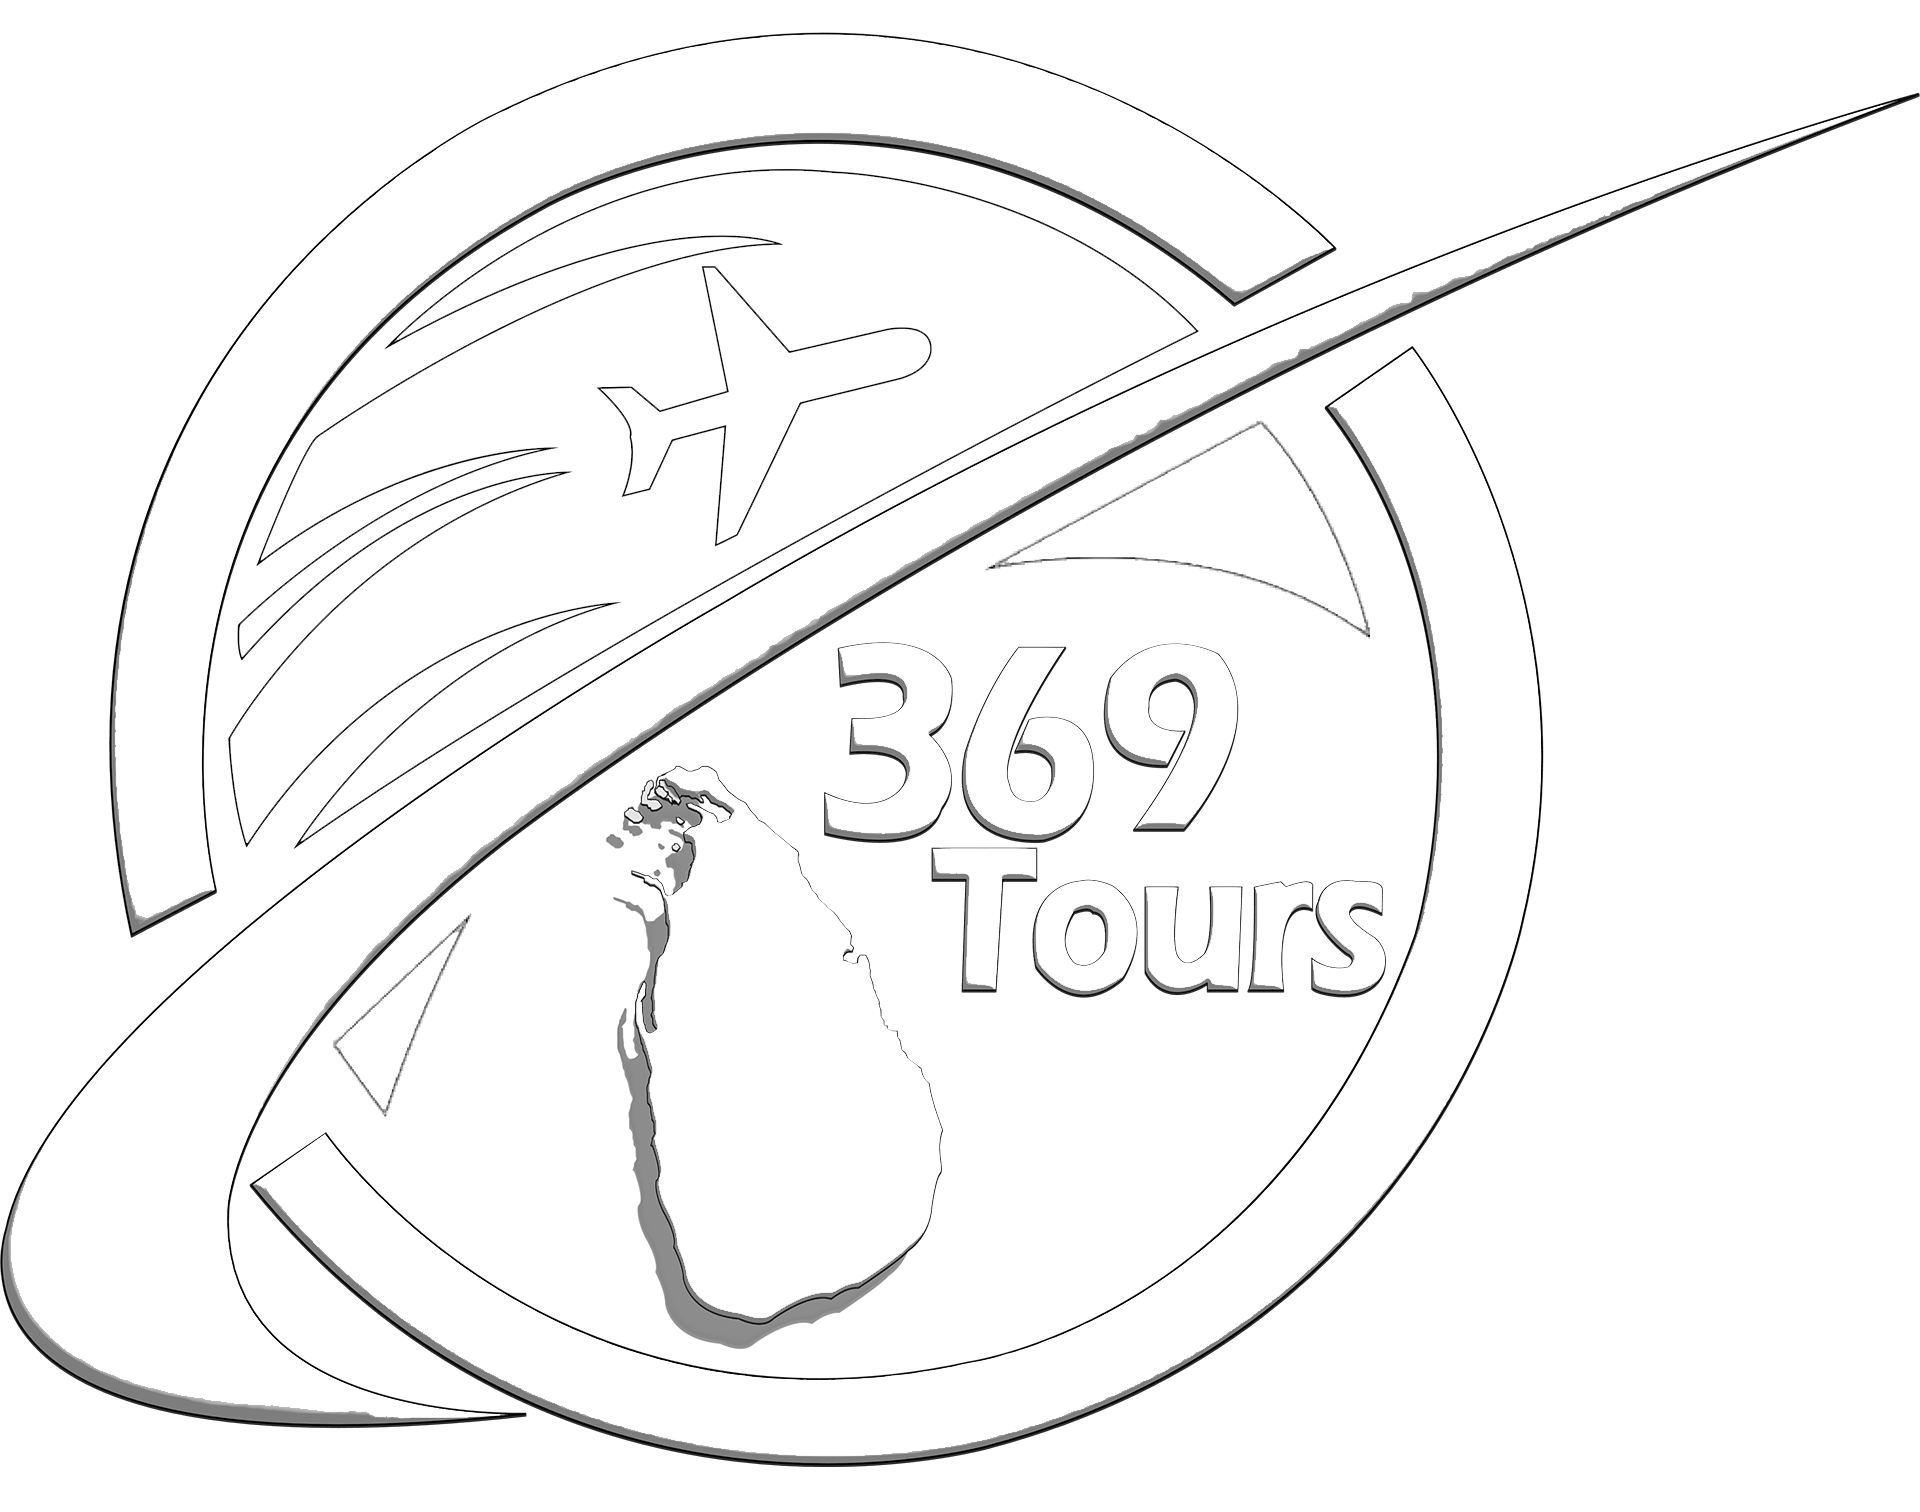 Sri Lanka 369 Tours